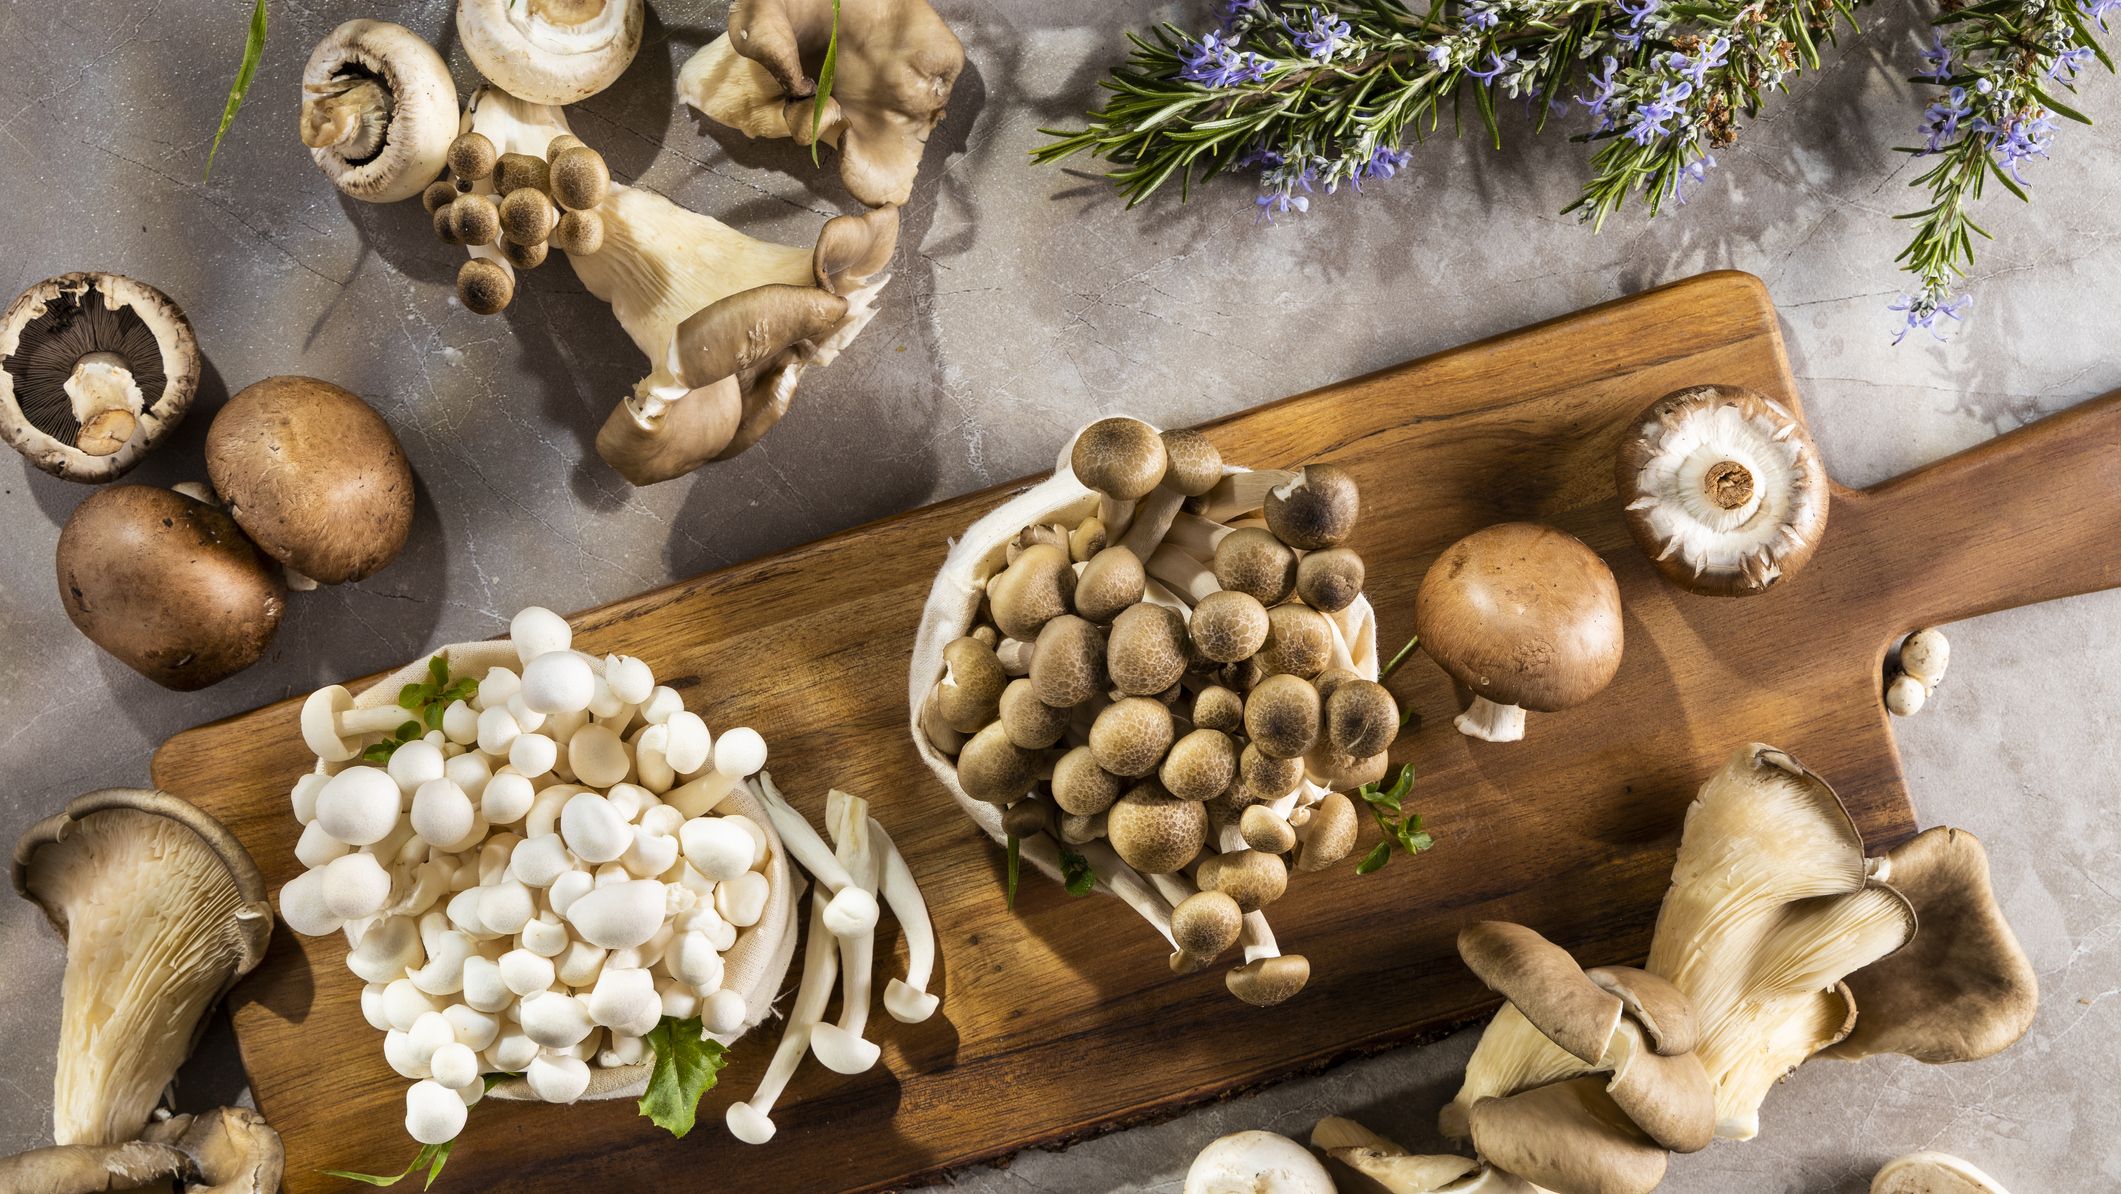 Natural Life Mushroom Mug with Lid - Grow Your Own Way